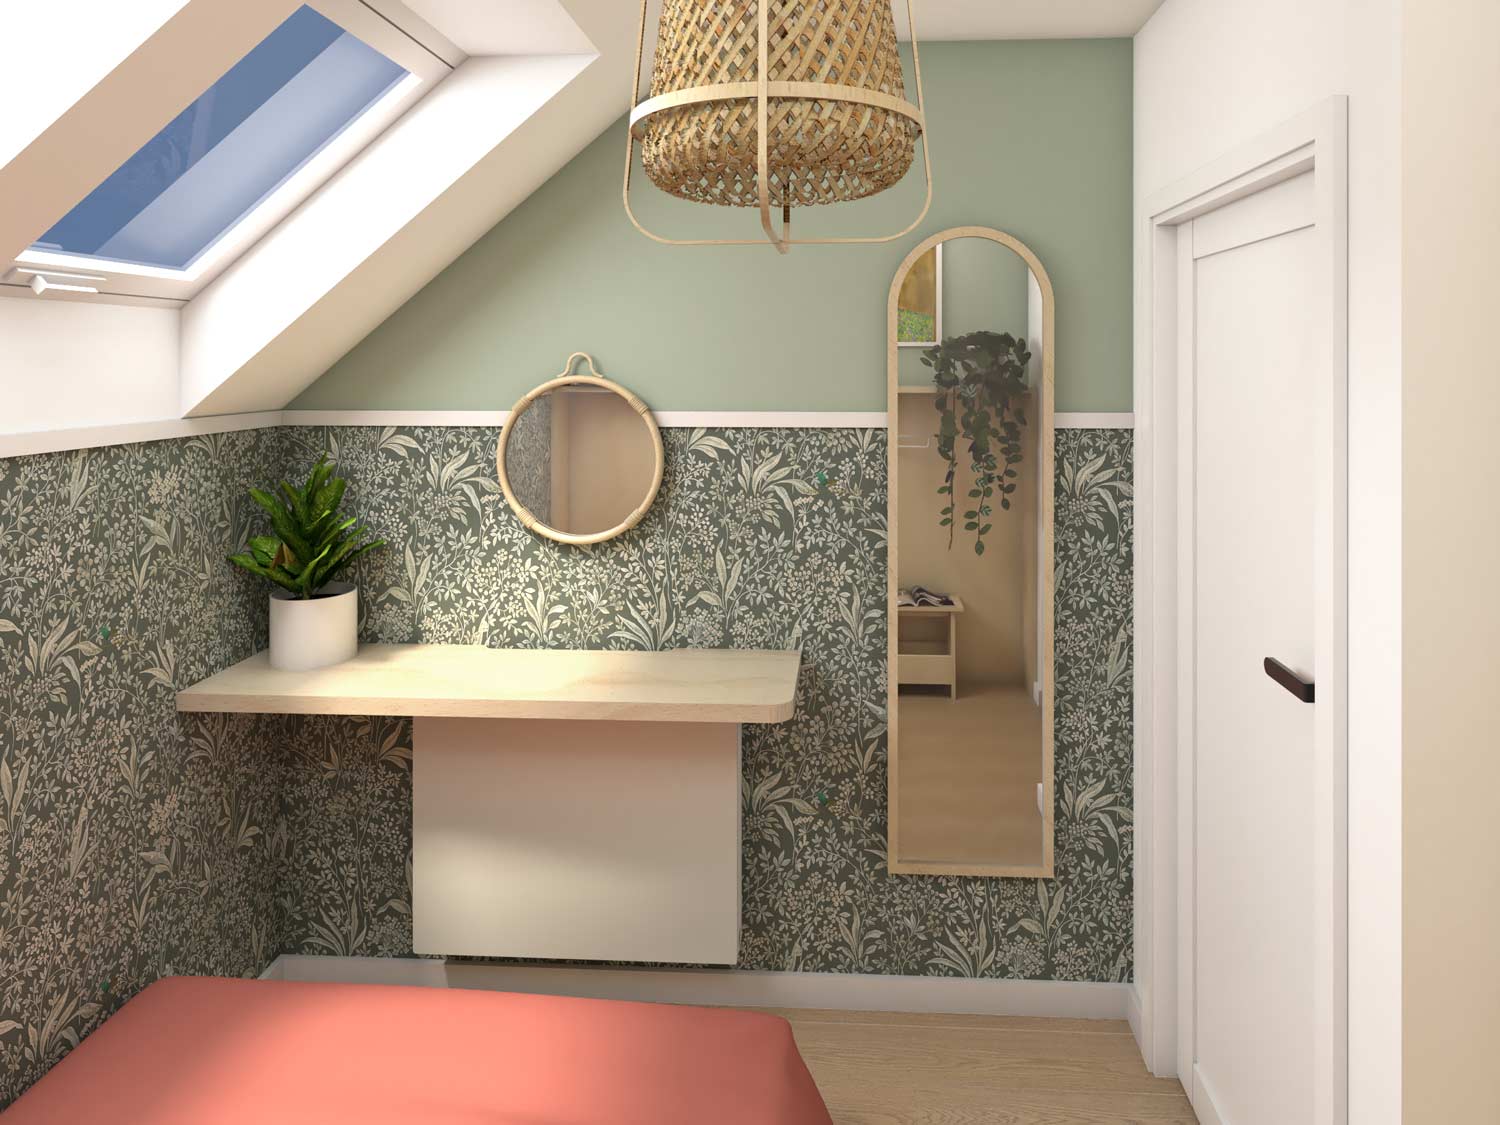 Wizualizacja projektu wnętrza głównej sypialni, widok na toaletkę